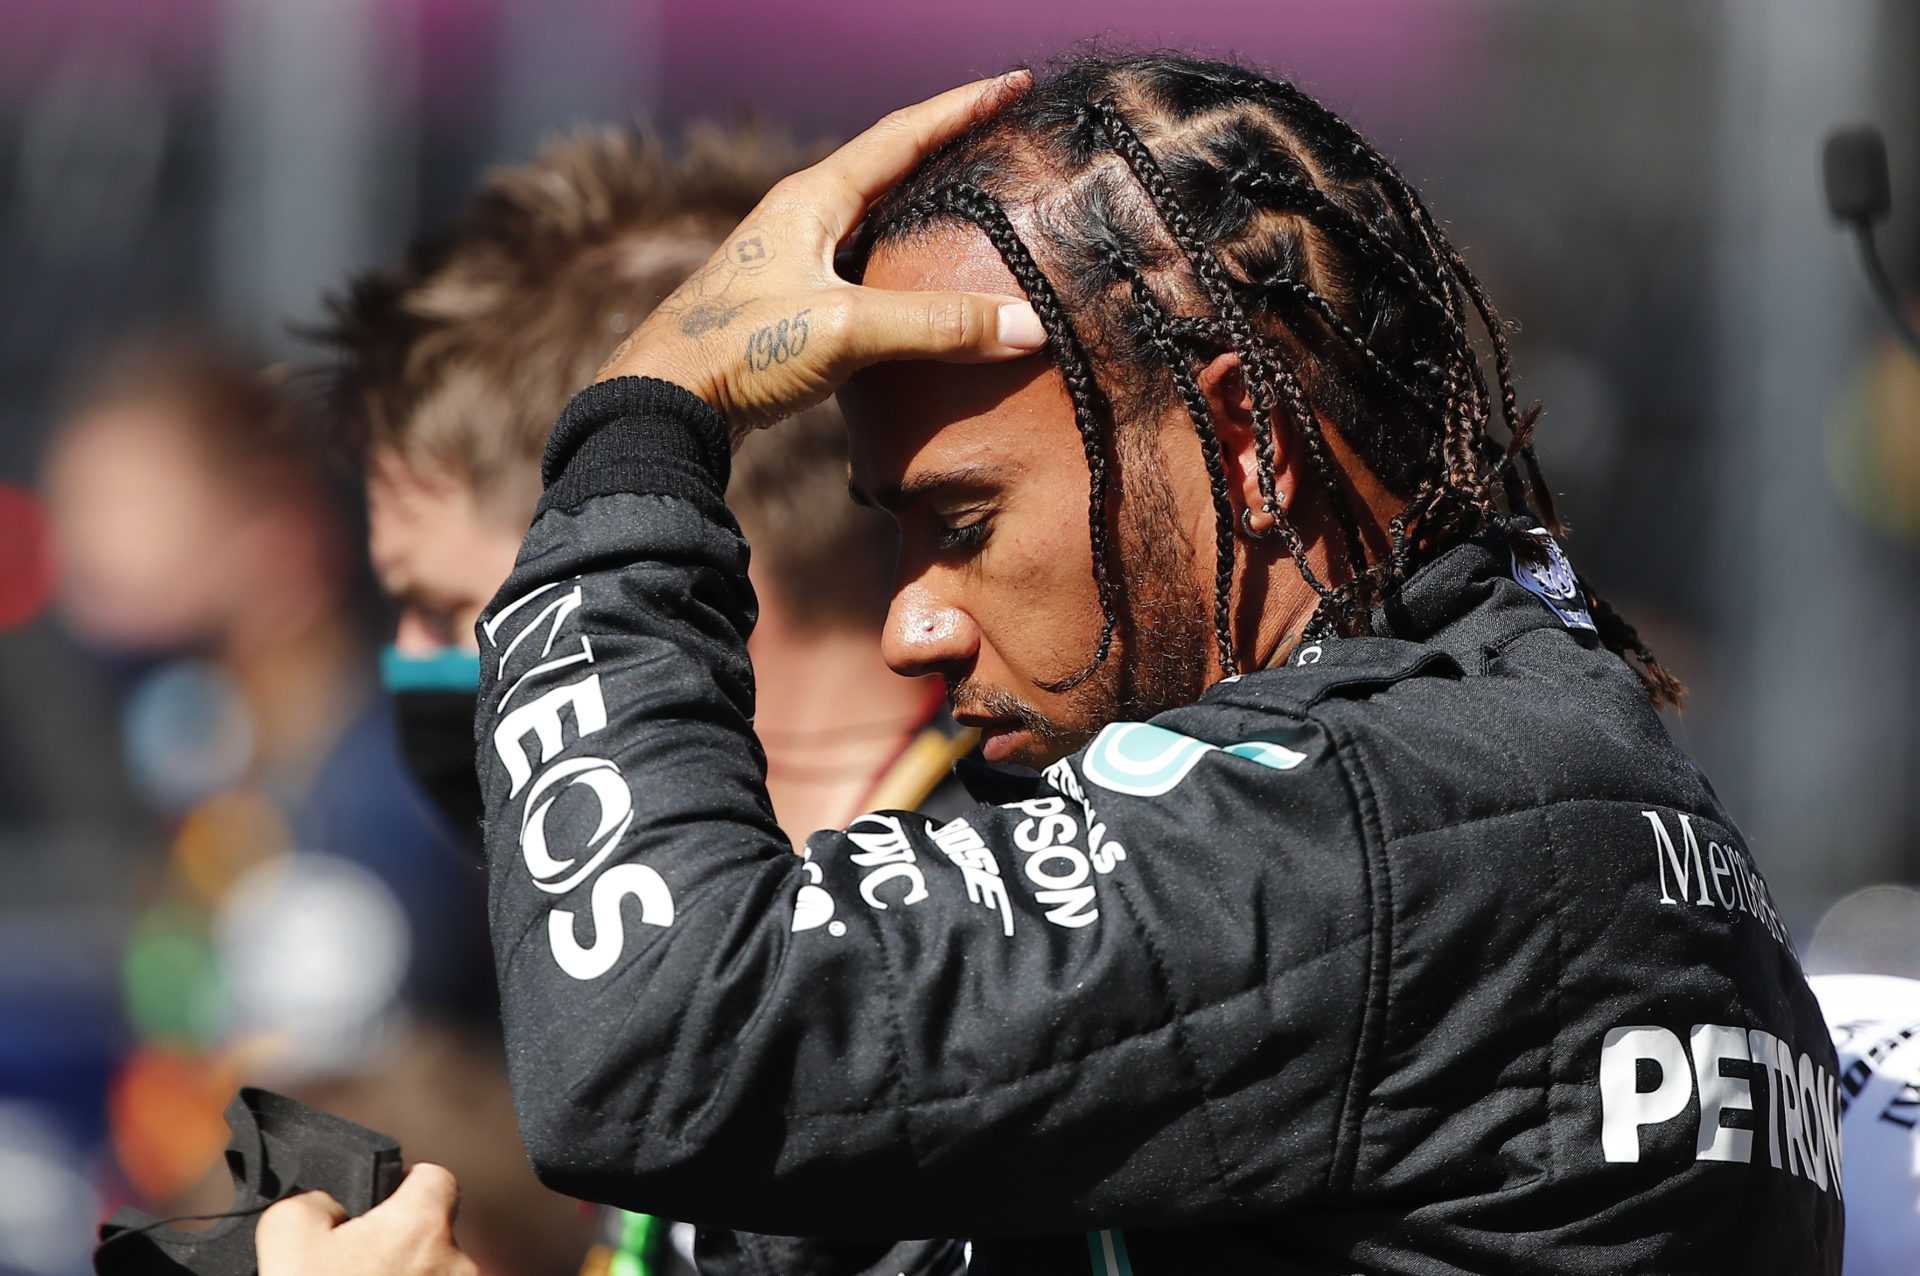 Lewis Hamilton dangereusement proche d'une interdiction de course à la suite d'un incident du Grand Prix de Russie